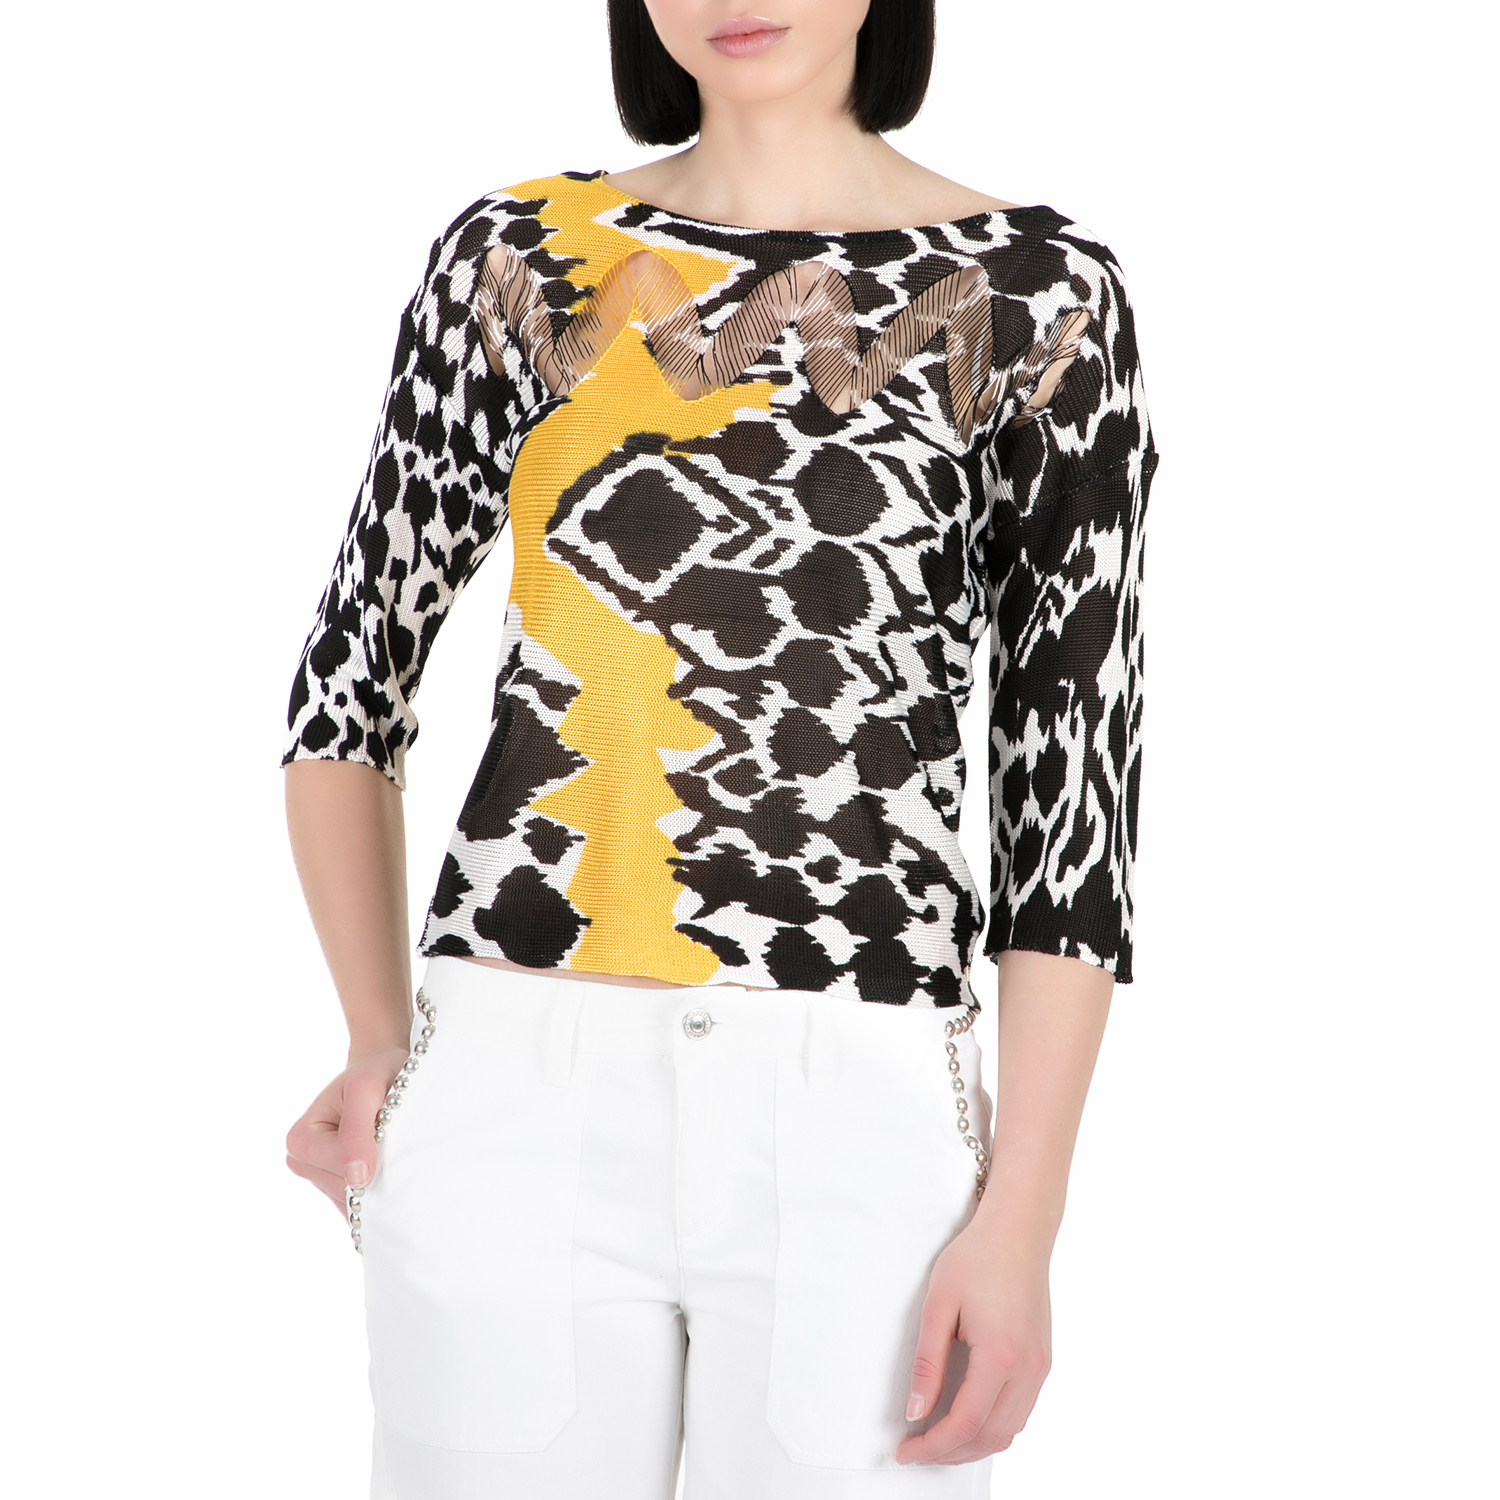 Γυναικεία/Ρούχα/Μπλούζες/Μακρυμάνικες GUESS - Γυναικεία μακρυμάνικη μπλούζα GUESS με μοτίβο